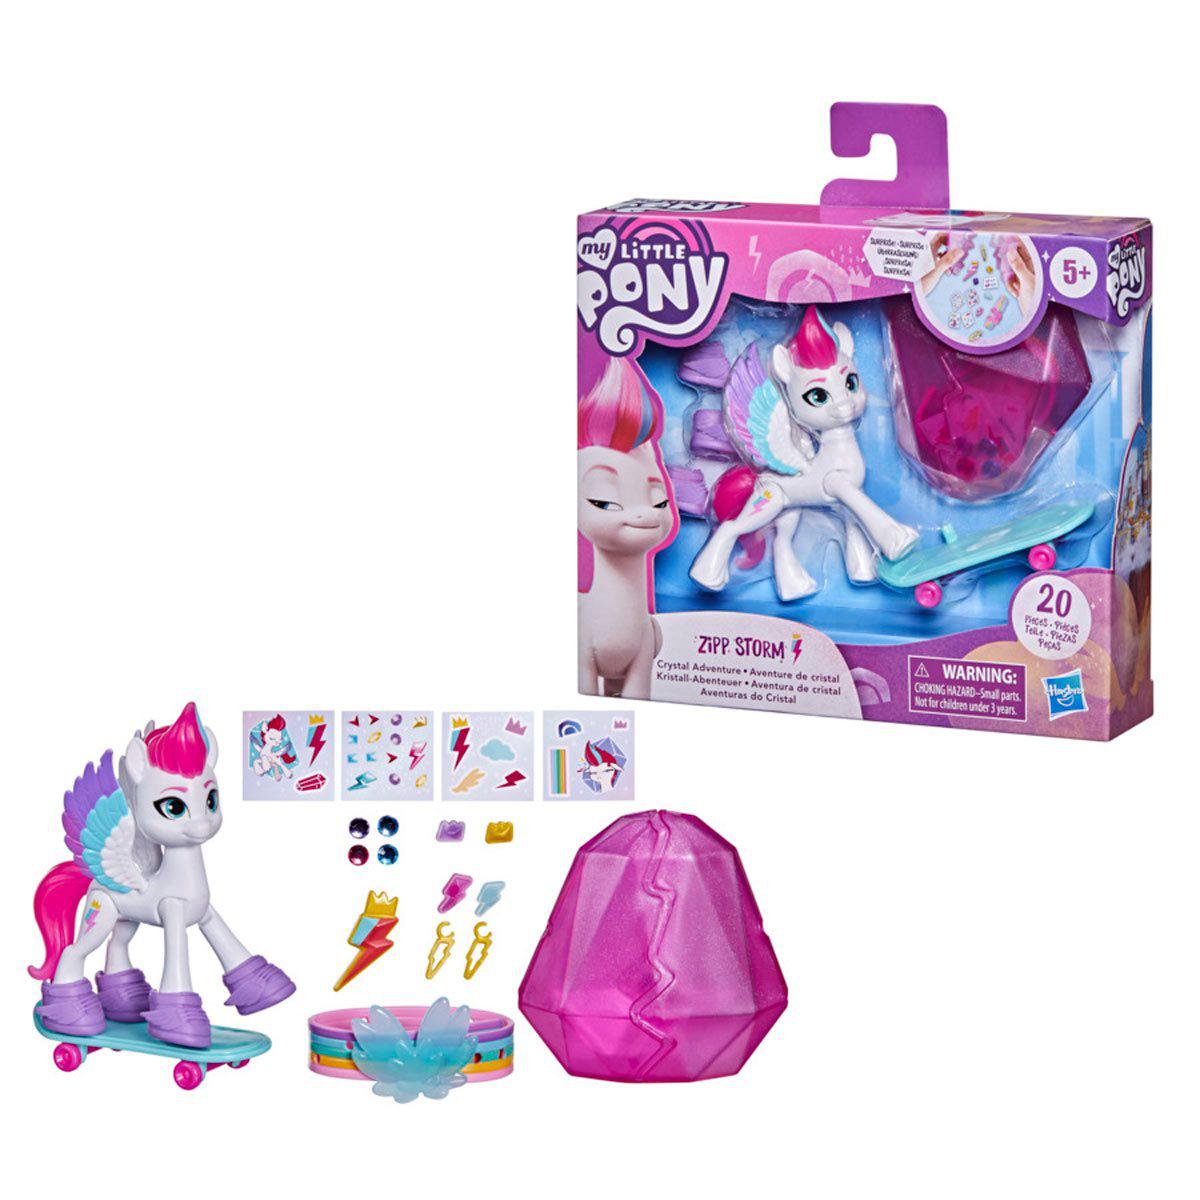 Hasbro-My Little Pony: A New Generation Crystal Adventure - Zipp Storm-F2452-Legacy Toys